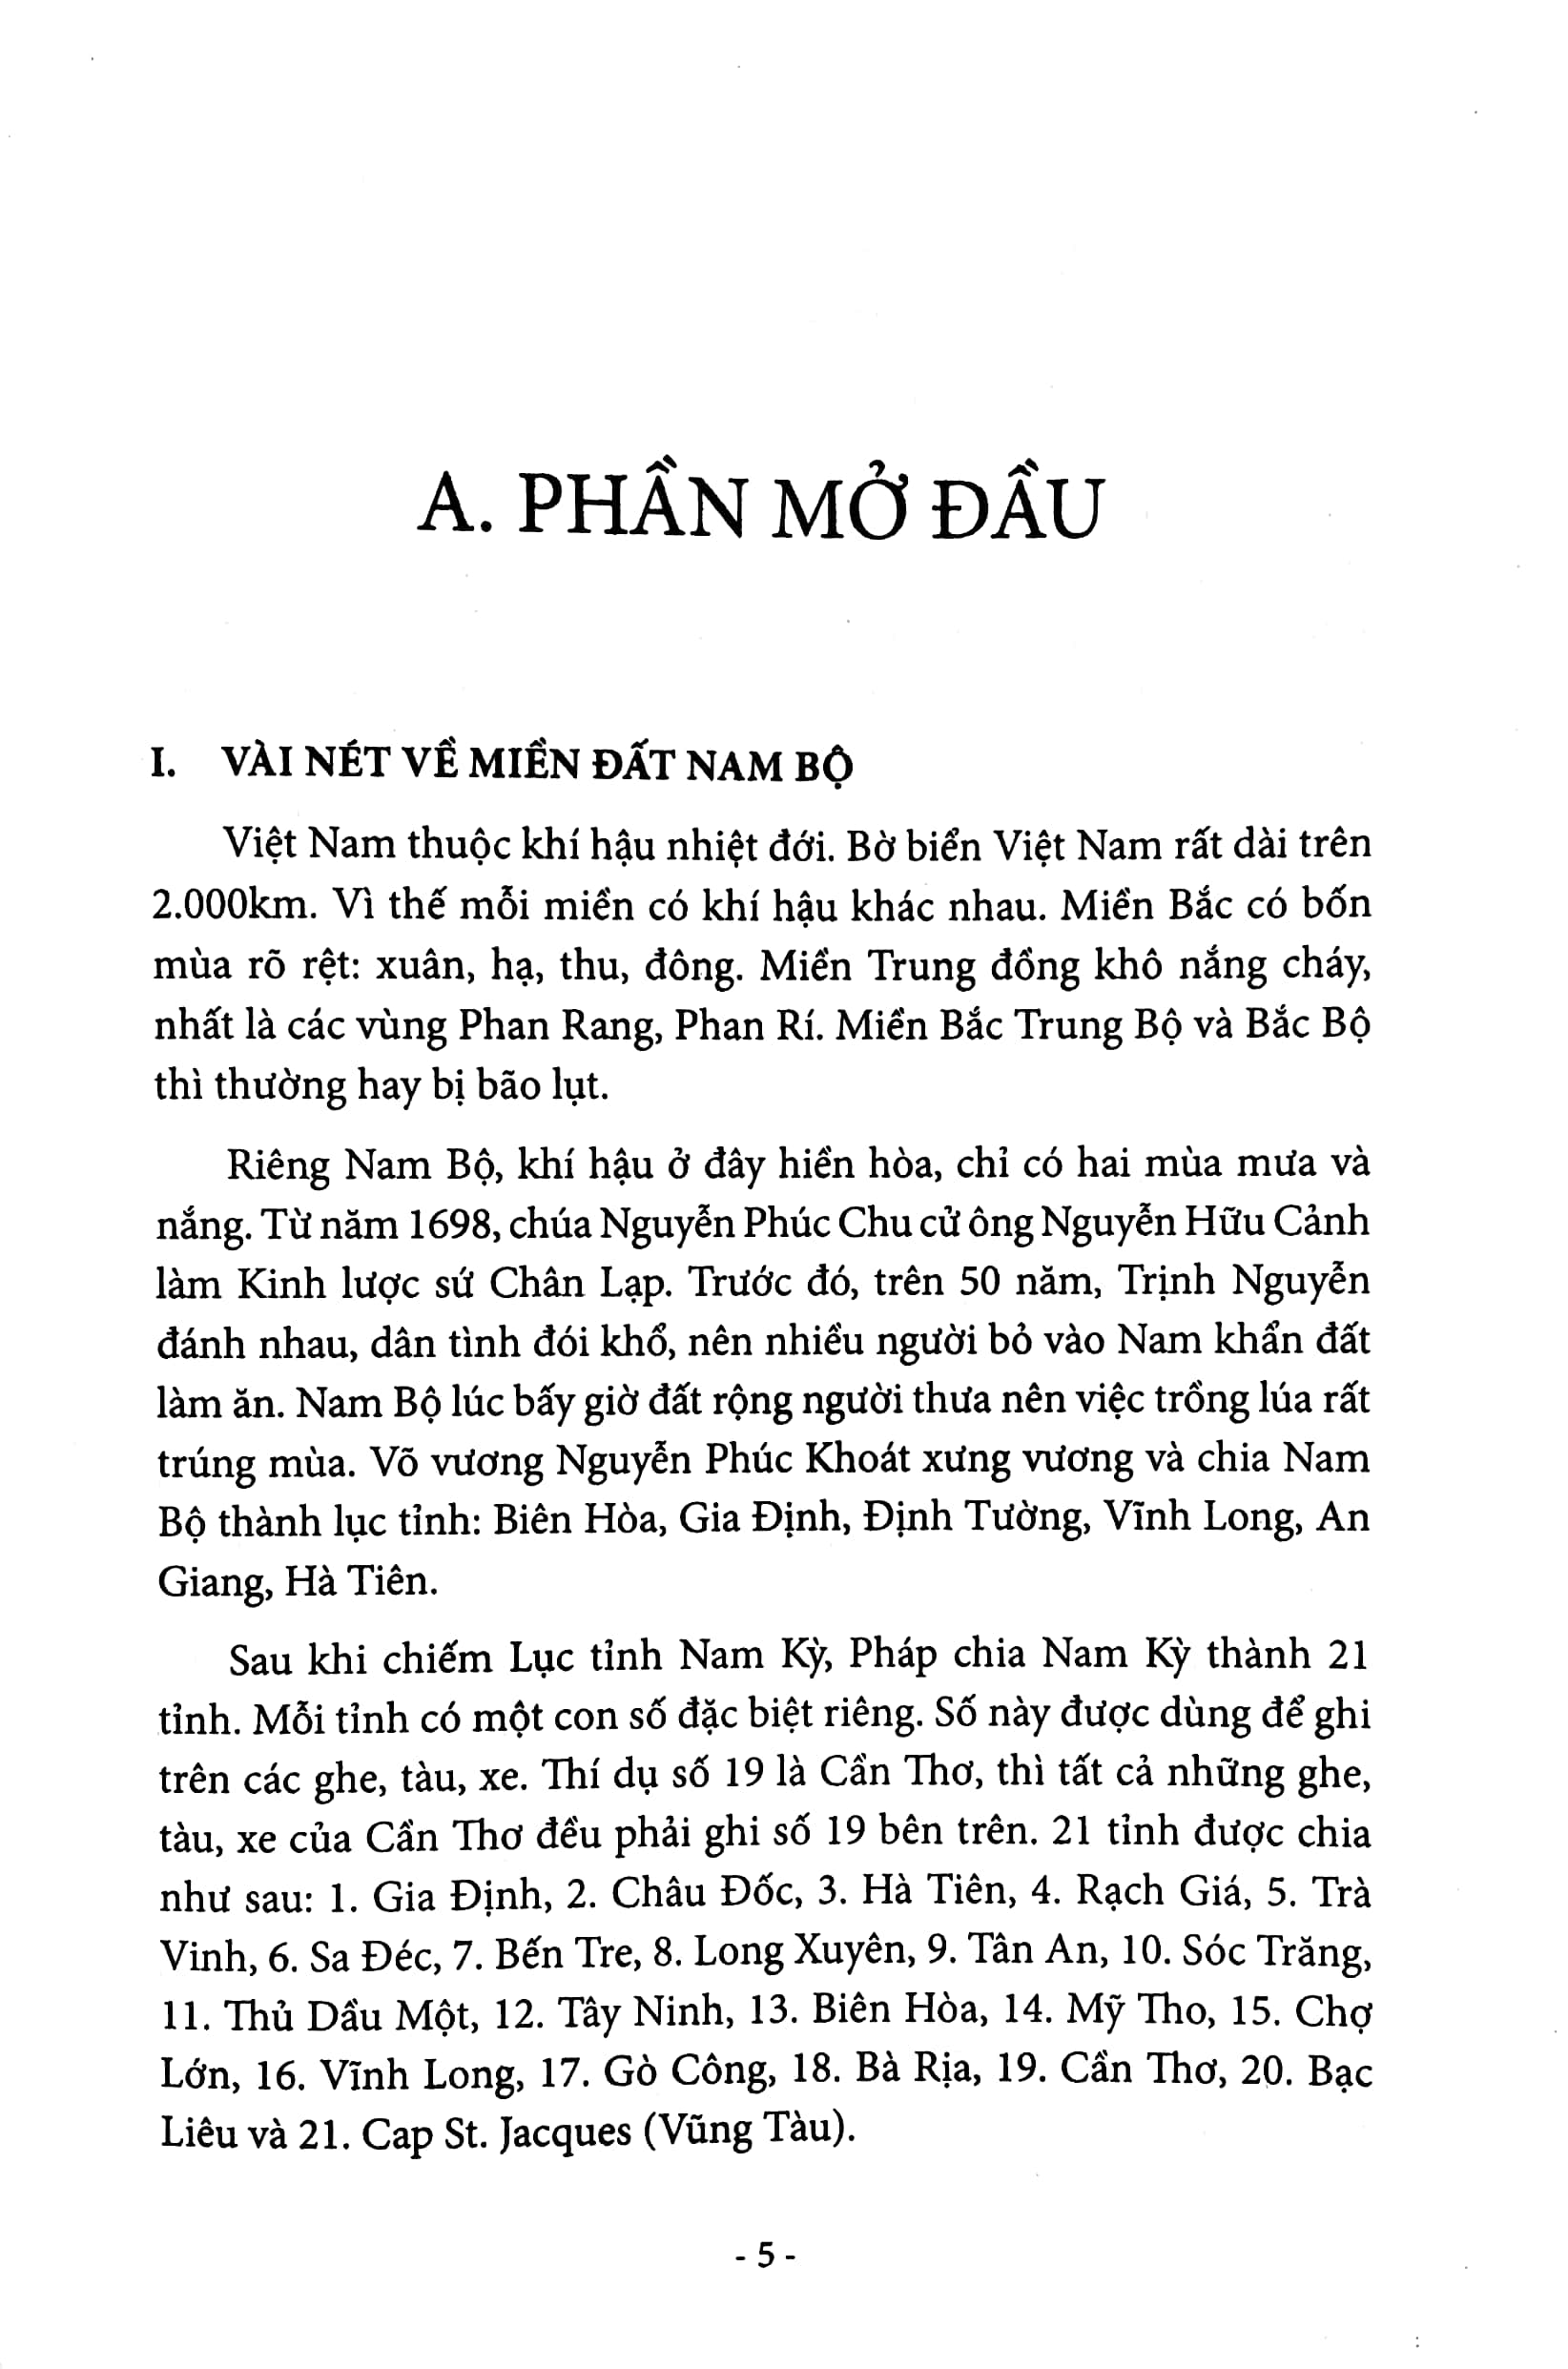 Ca Dao Dân Ca Lý - Hò - Vè Nam Bộ PDF